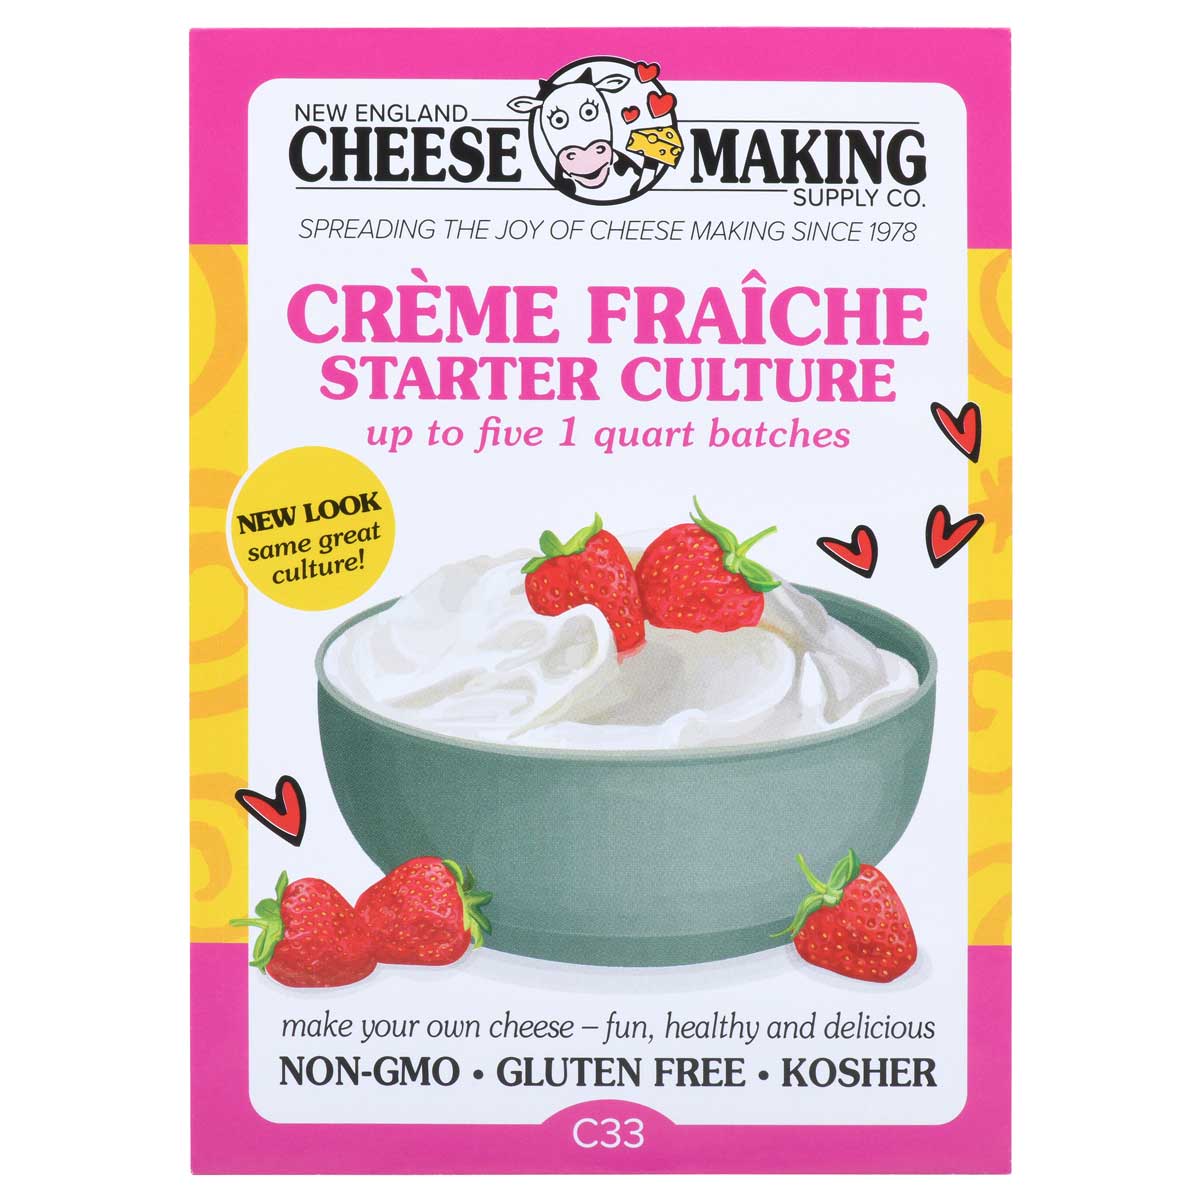 How to make crème fraîche, Recipe